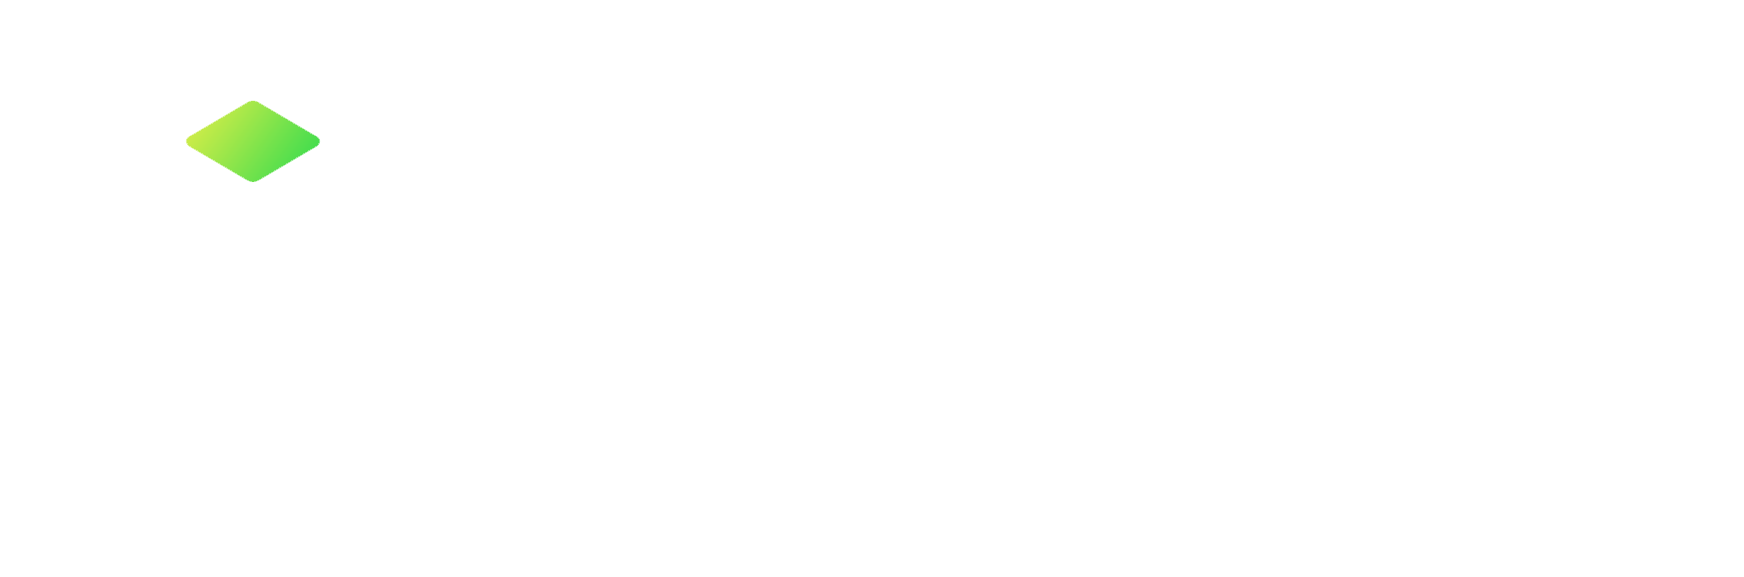 iyscale logo